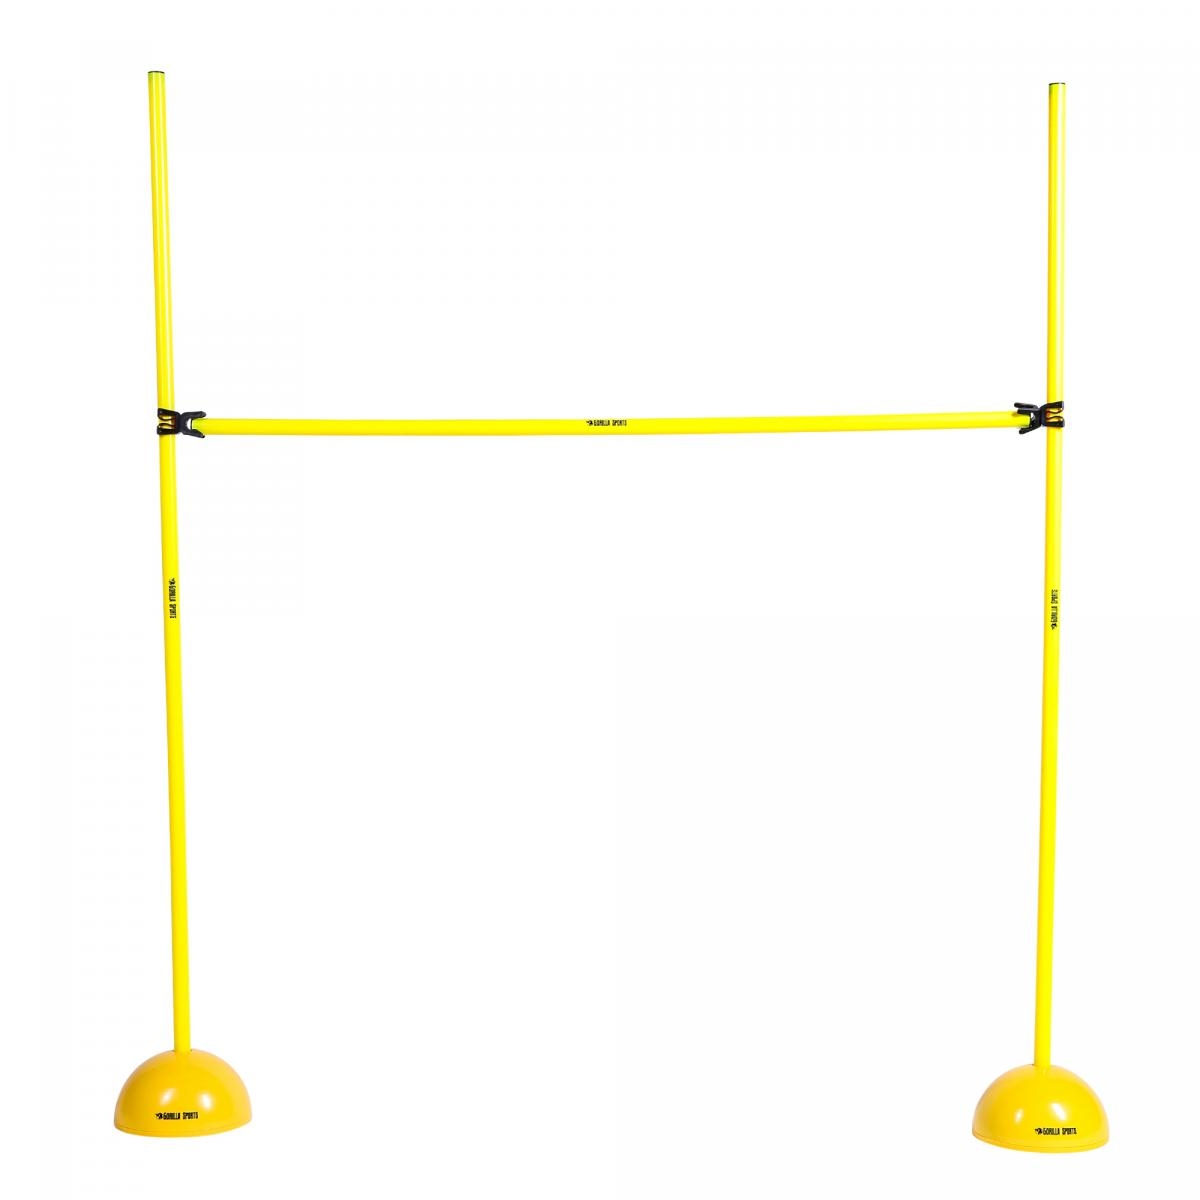 Far Sprungstangen-Set XS100yl 3 Stangen 100 cm, 2 X-Standfüße, 2 Leiterhürden 